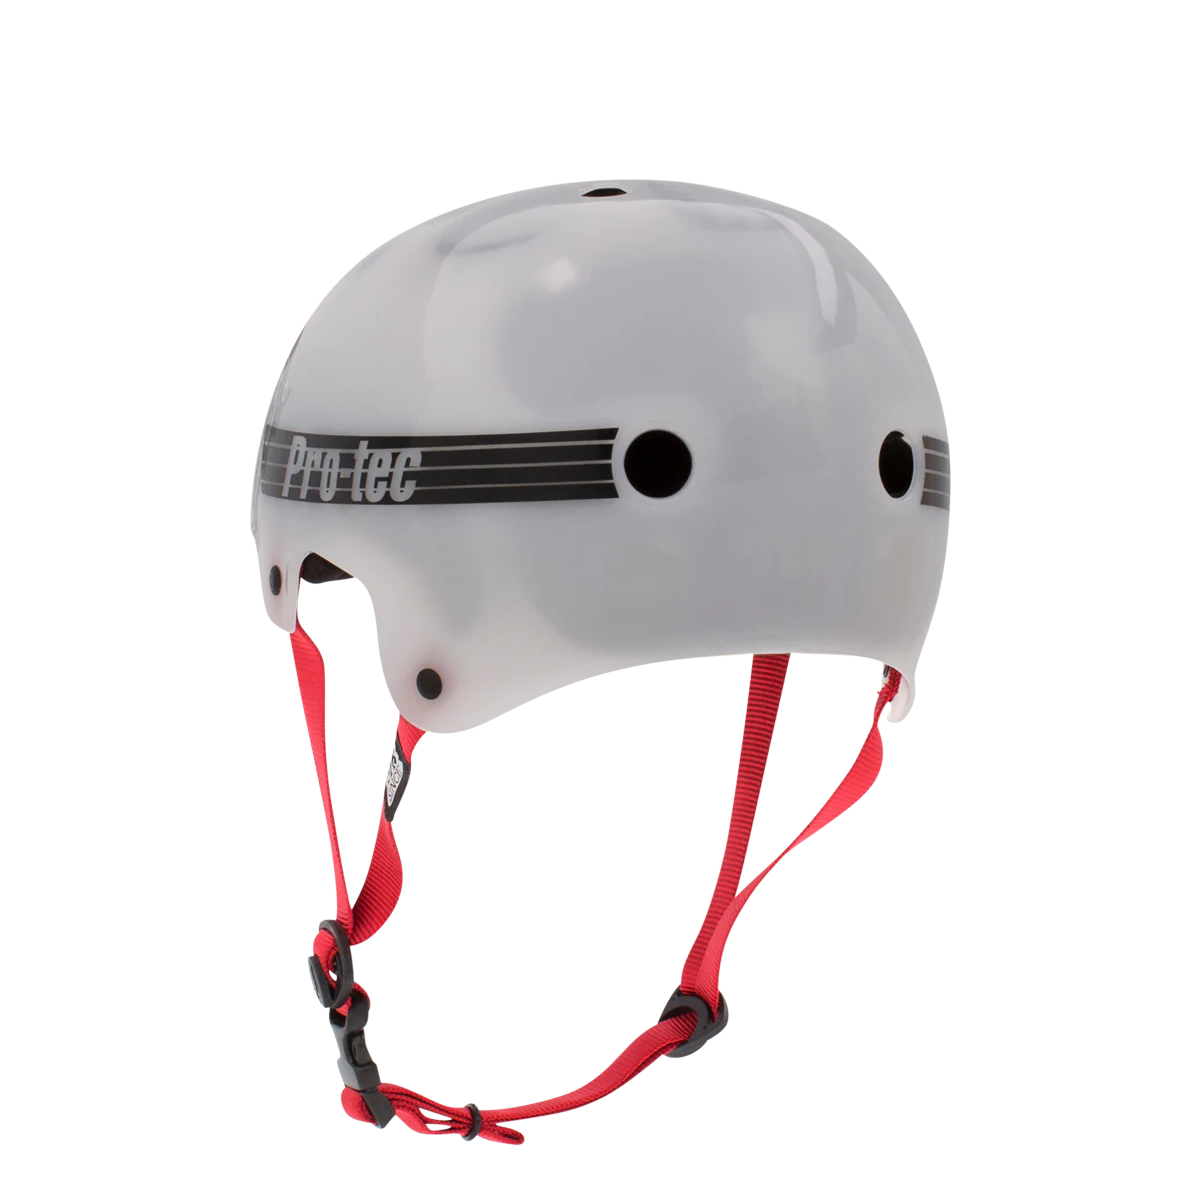 Pro Tec Bucky Lasek Skate Helmet - Translucent White